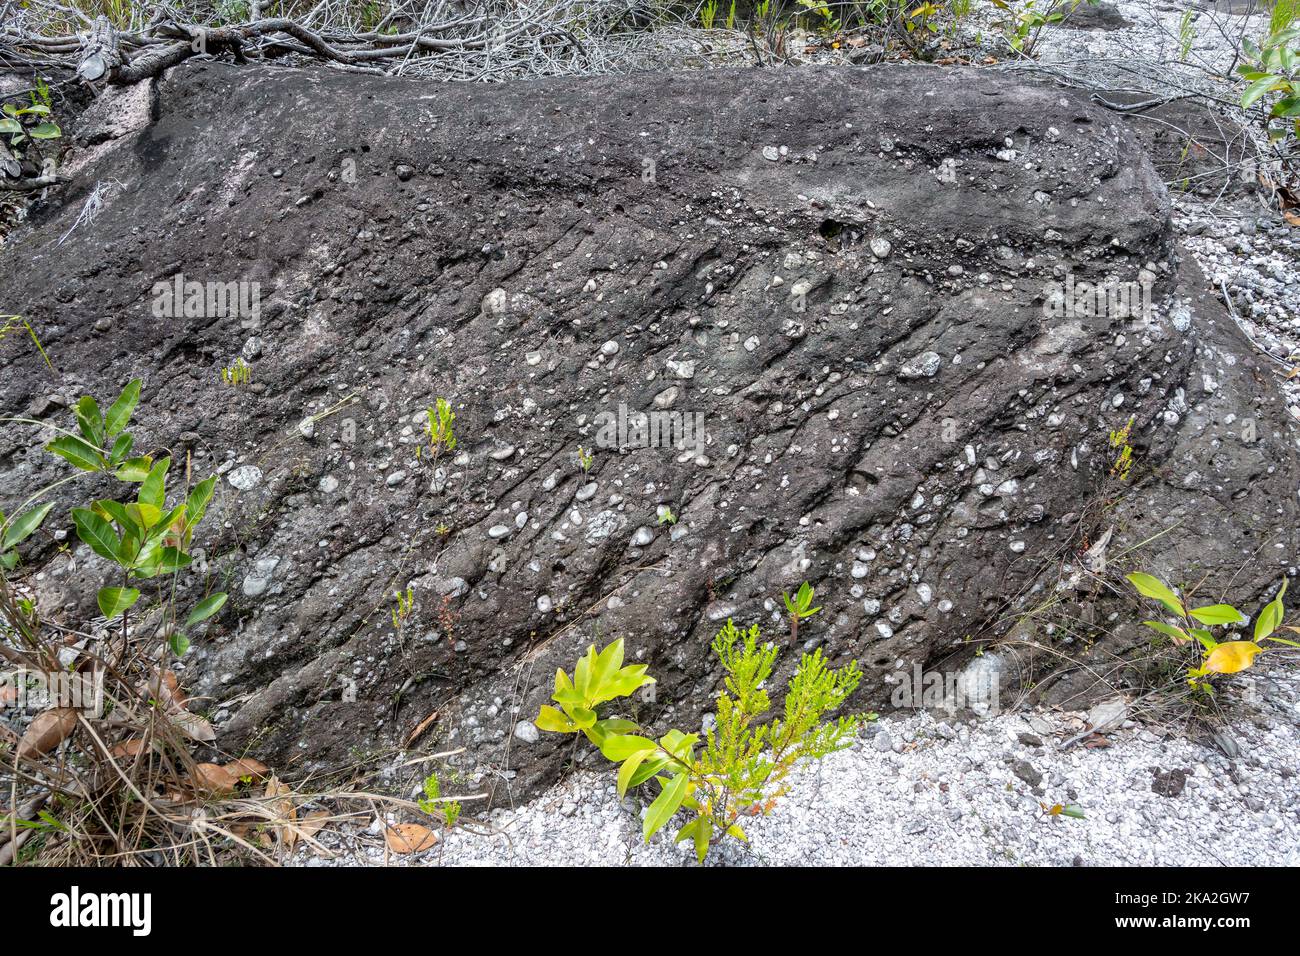 Präkambrische Kieselsteinsandsteine mit Kreuzbetten in den flachen Tepui-Bergen. Tepequém, Bundesstaat Roraima, Brasilien. Stockfoto